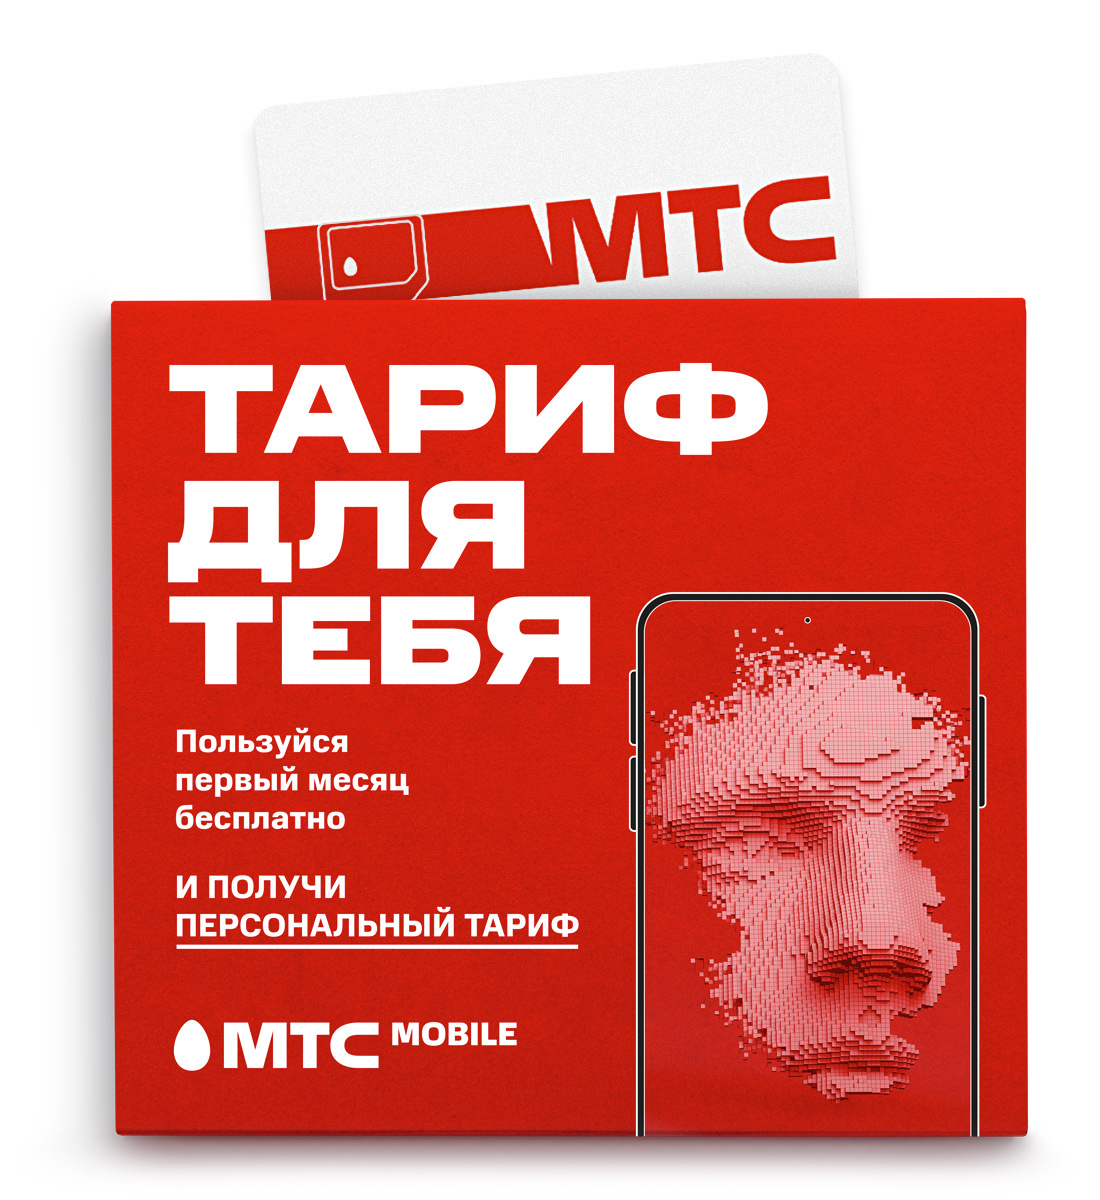 SIM-карта с Безлимитным интернетом МТС Премиум 500